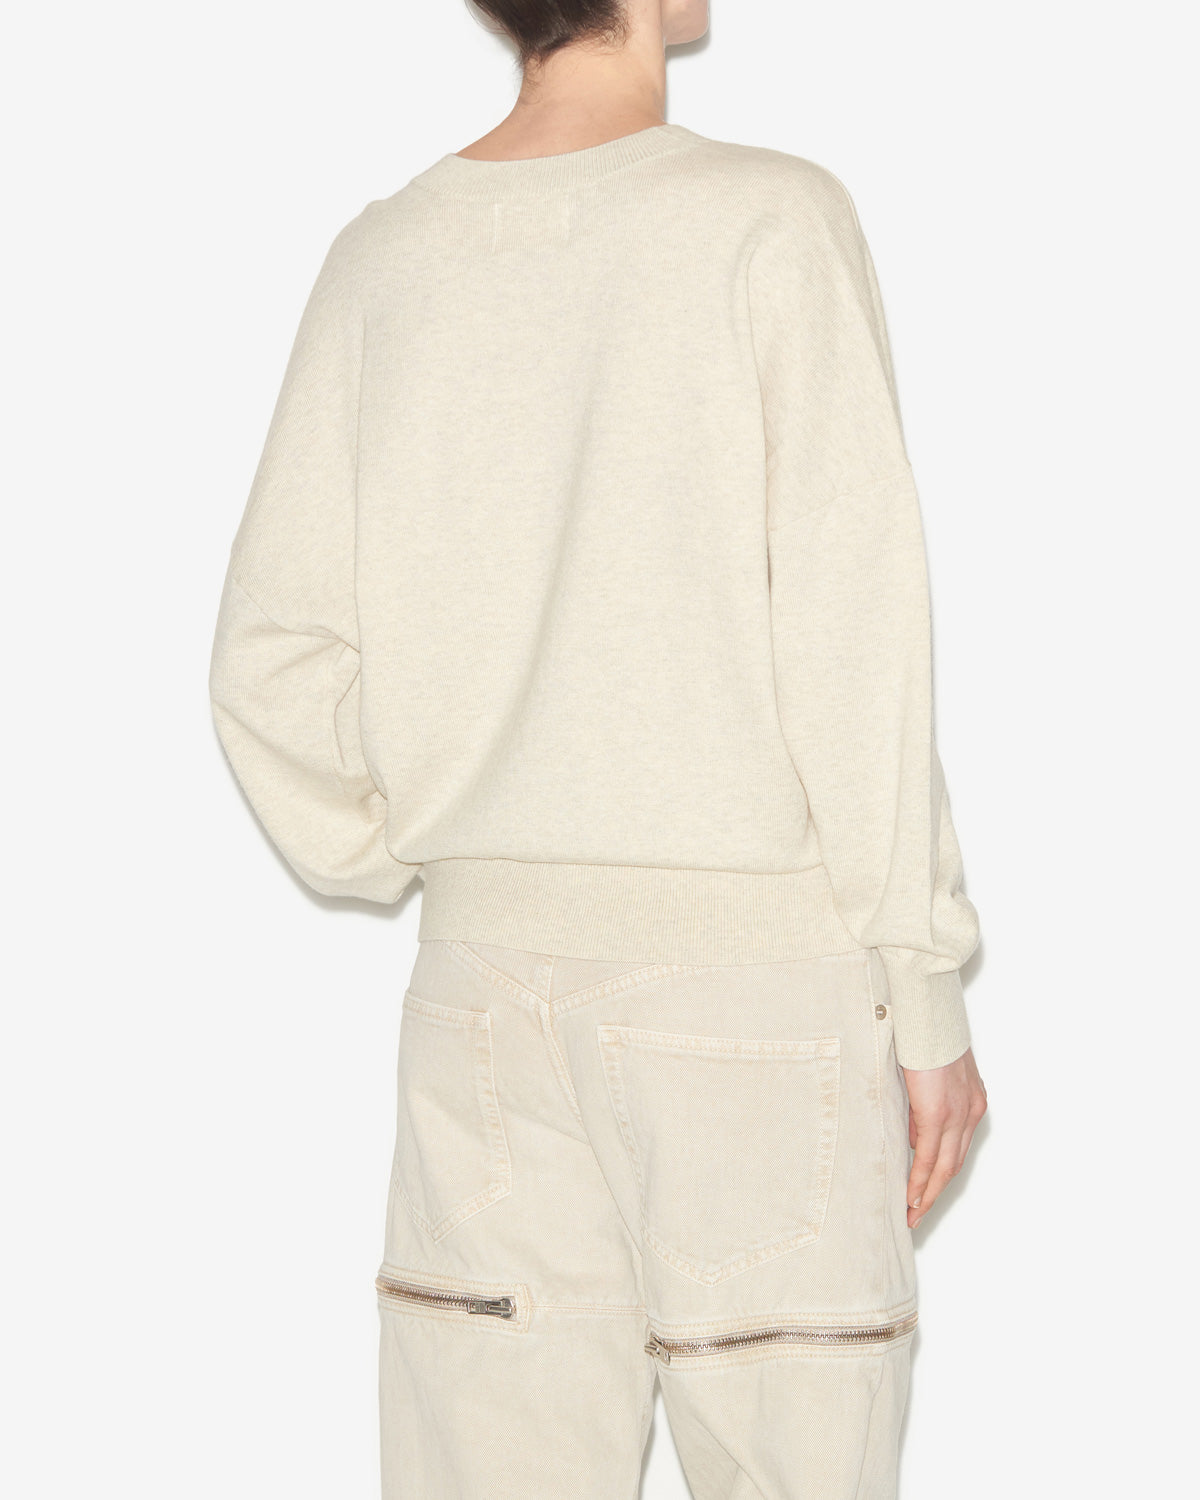 Marisans sweater Woman Light gray-camel 3